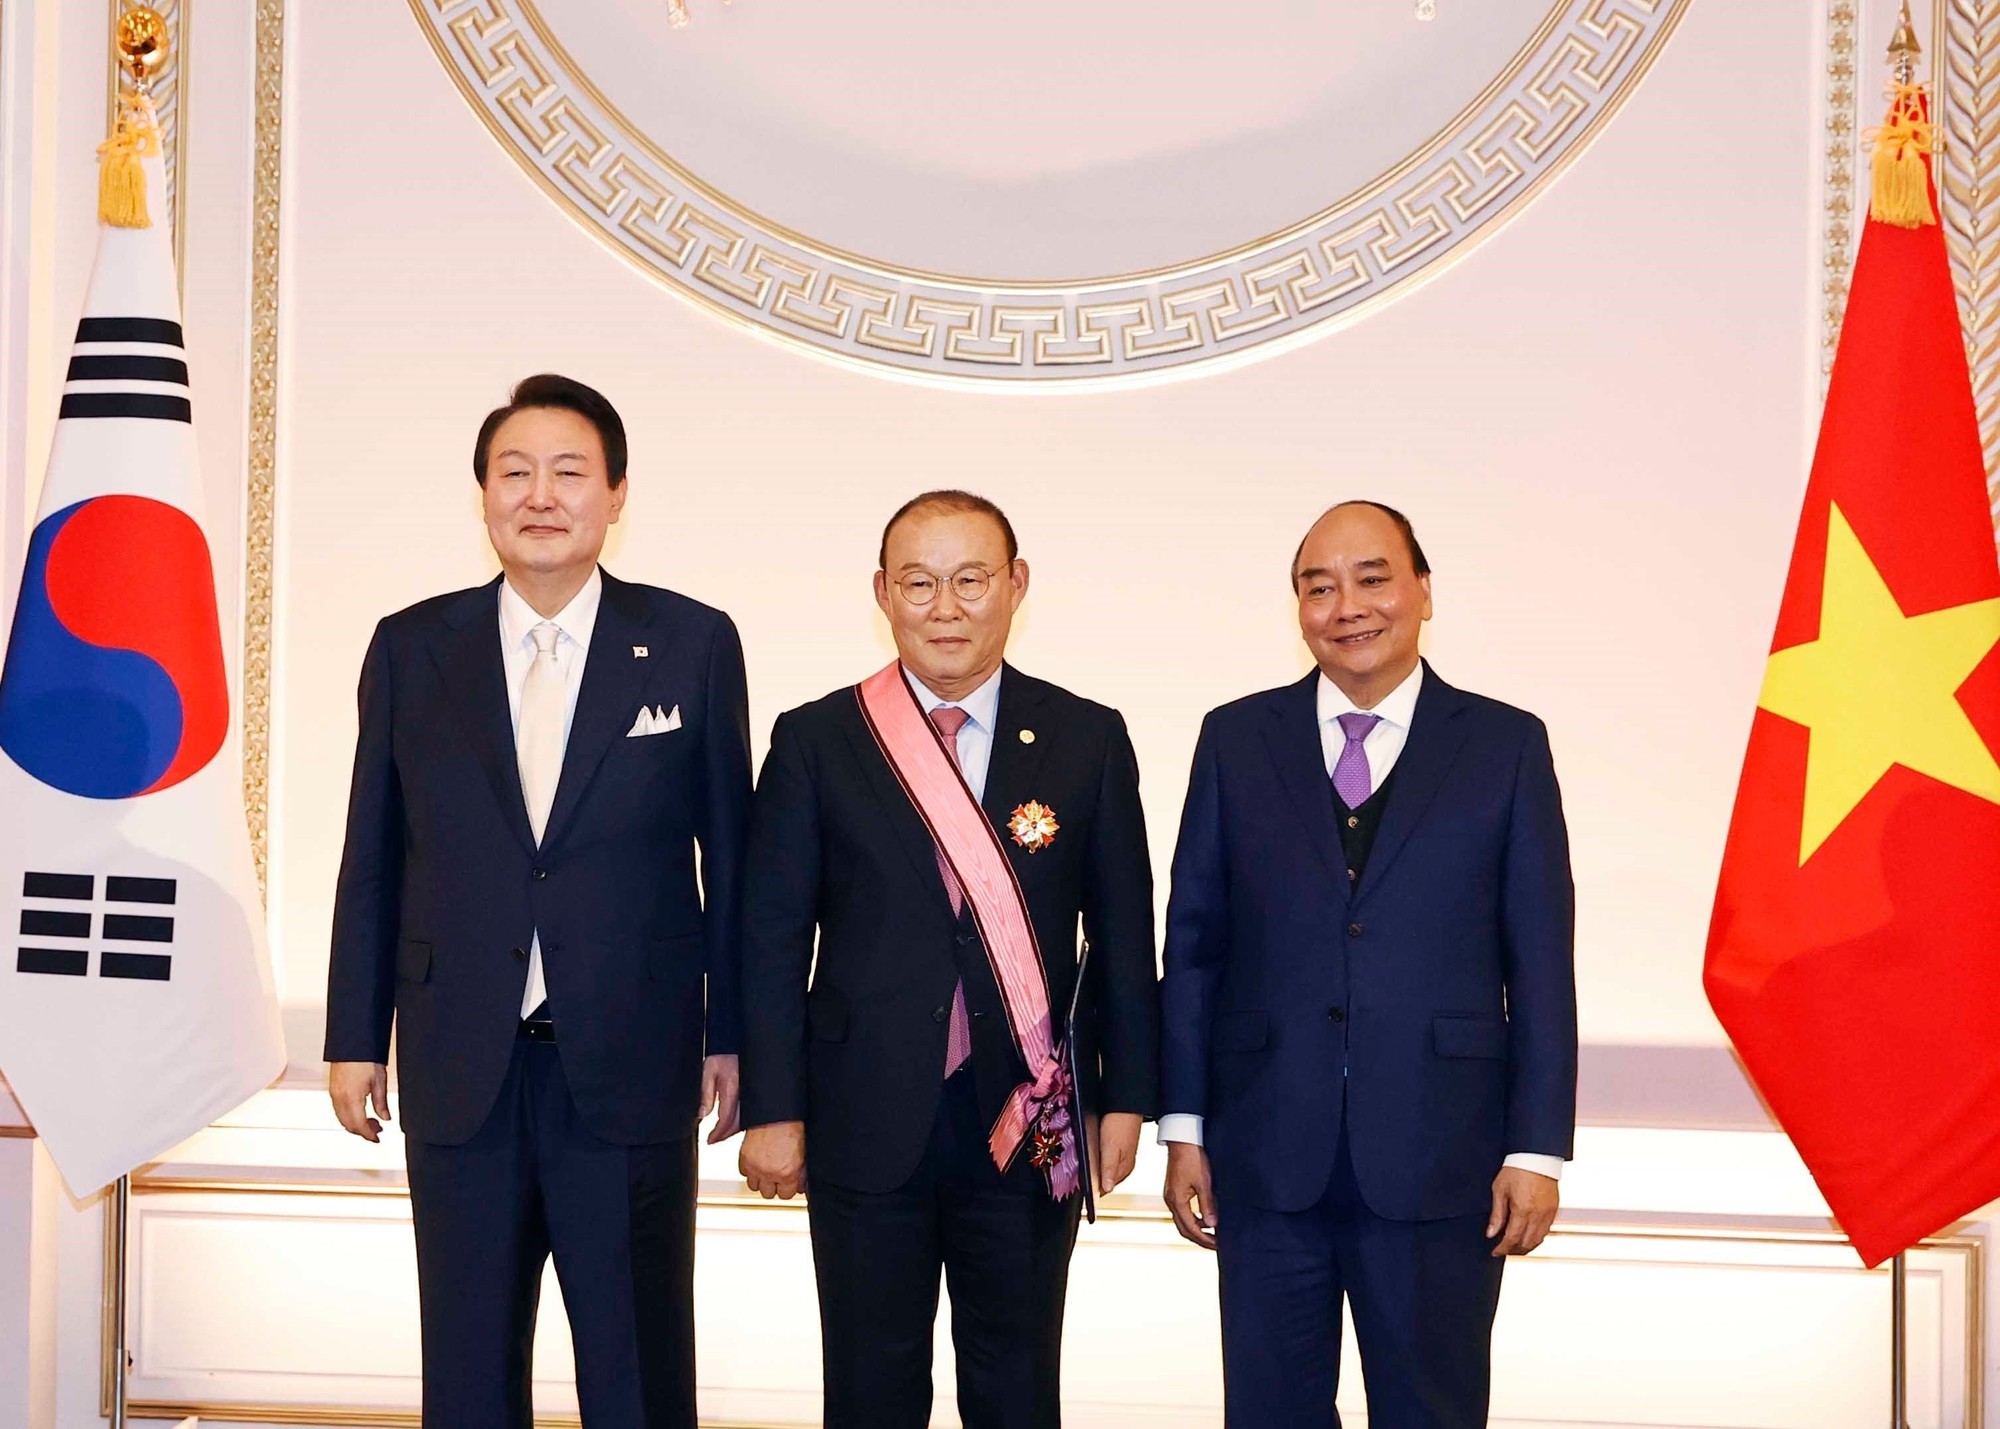 HLV Park Hang Seo được trao Huân chương vì đóng góp cho quan hệ Việt-Hàn - Ảnh 1.